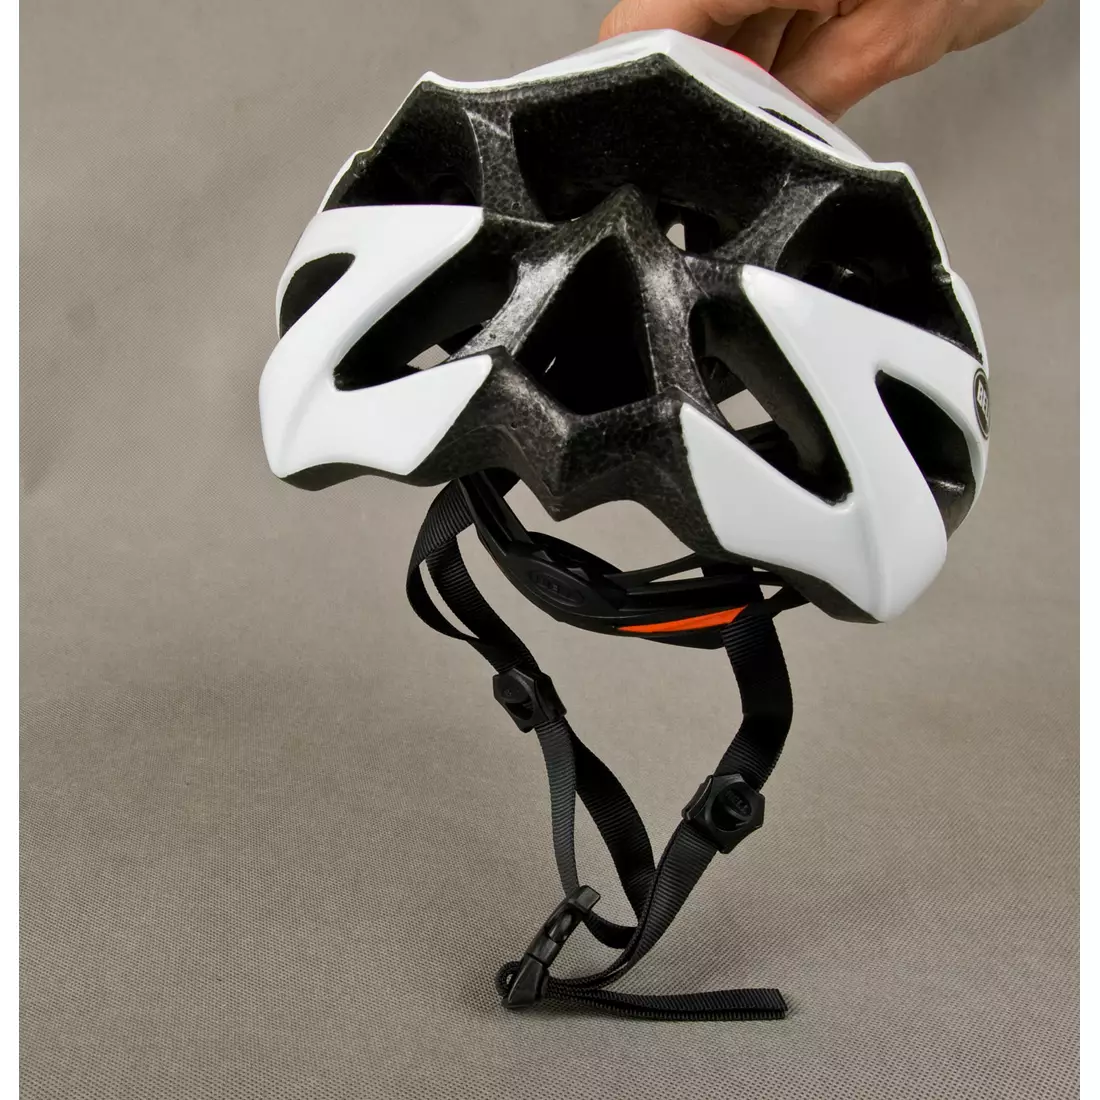 BELL ARRAY road bicycle helmet orange-white